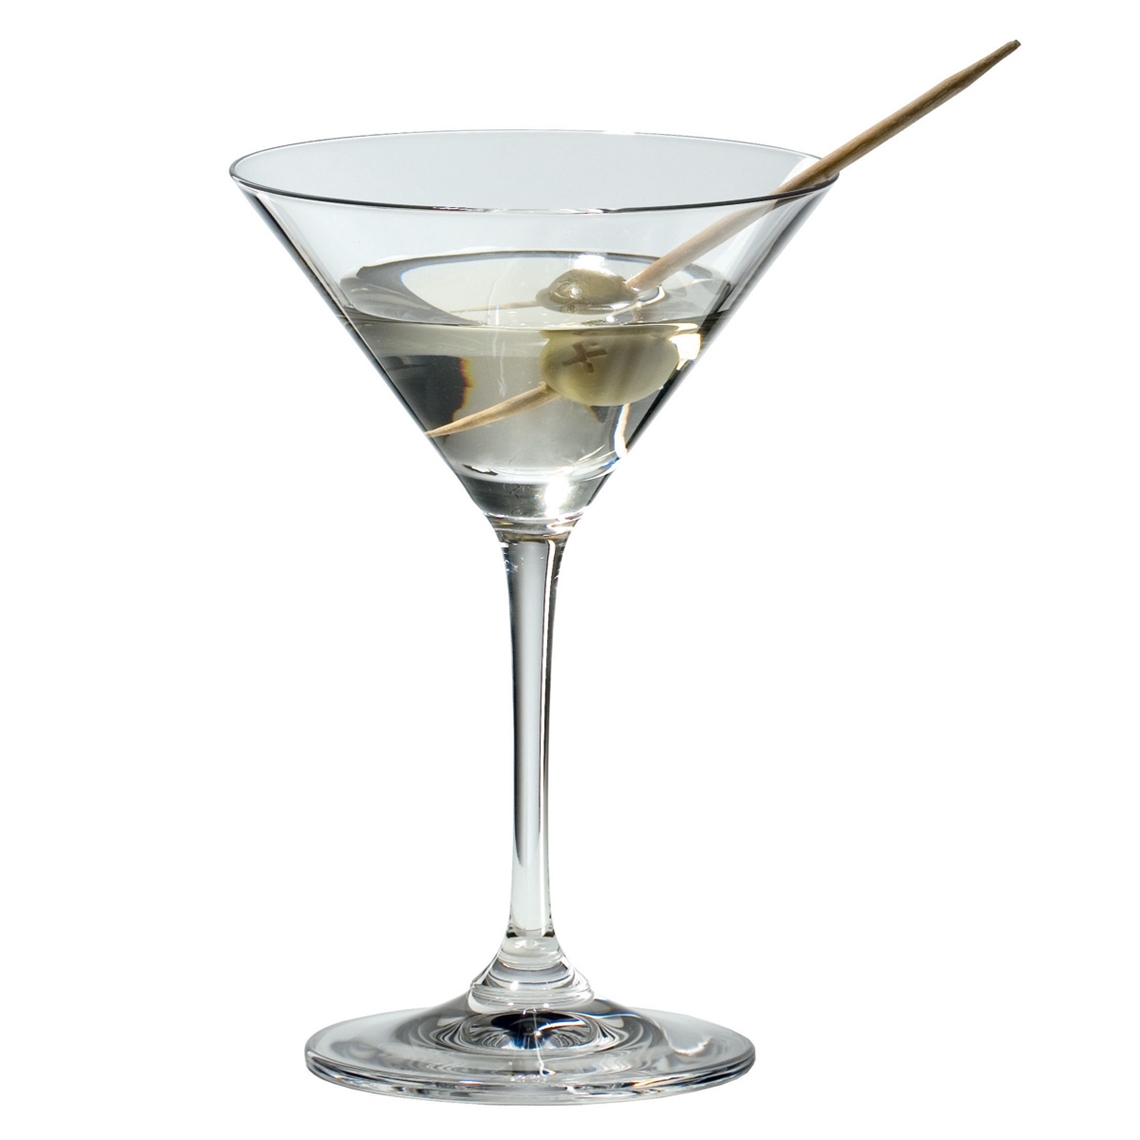 View more zalto from our Martini Glasses range